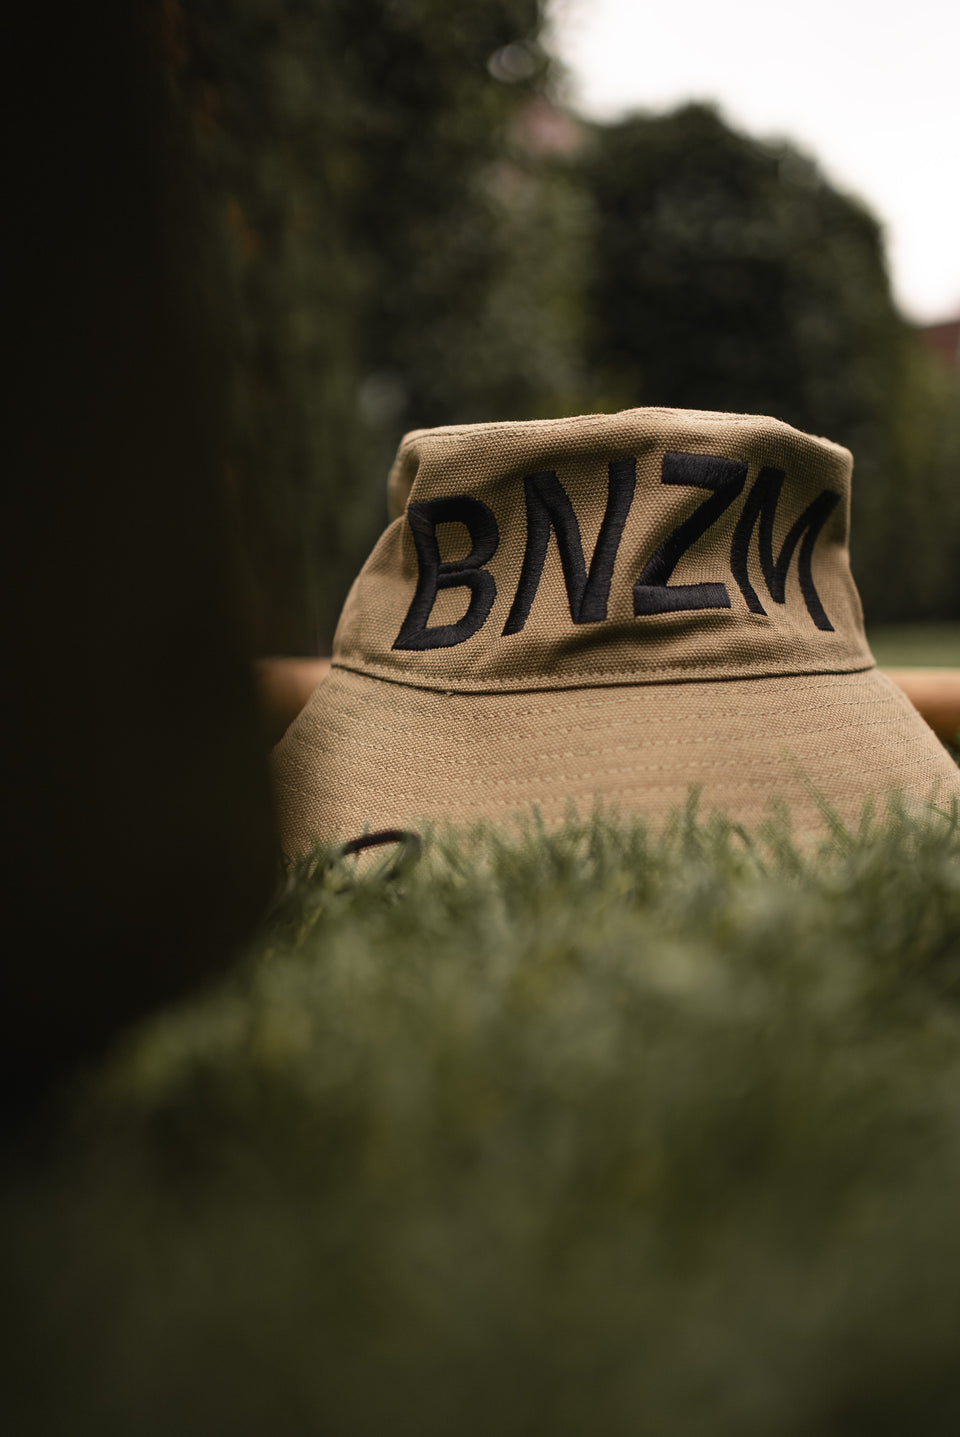 BNZM Digger Hat